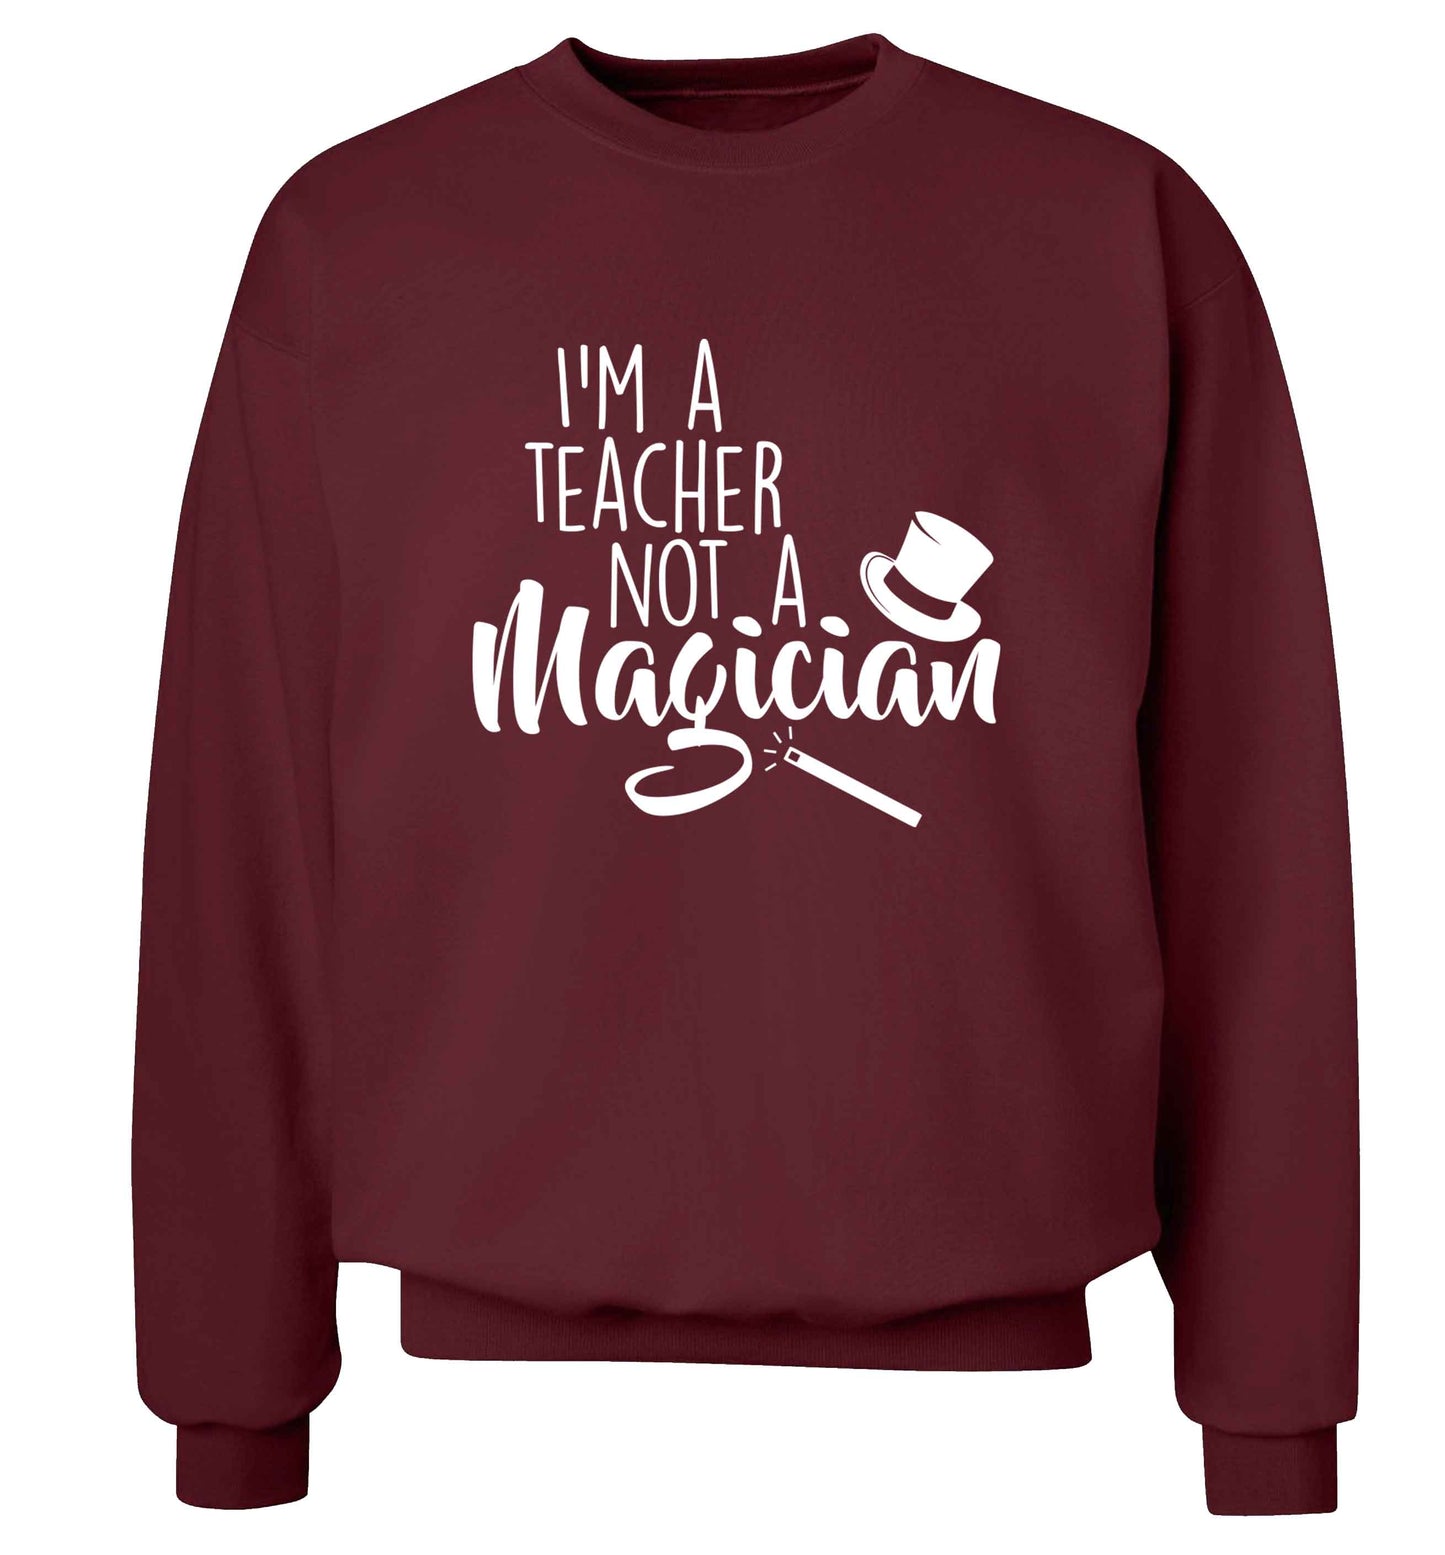 I'm a teacher not a magician adult's unisex maroon sweater 2XL